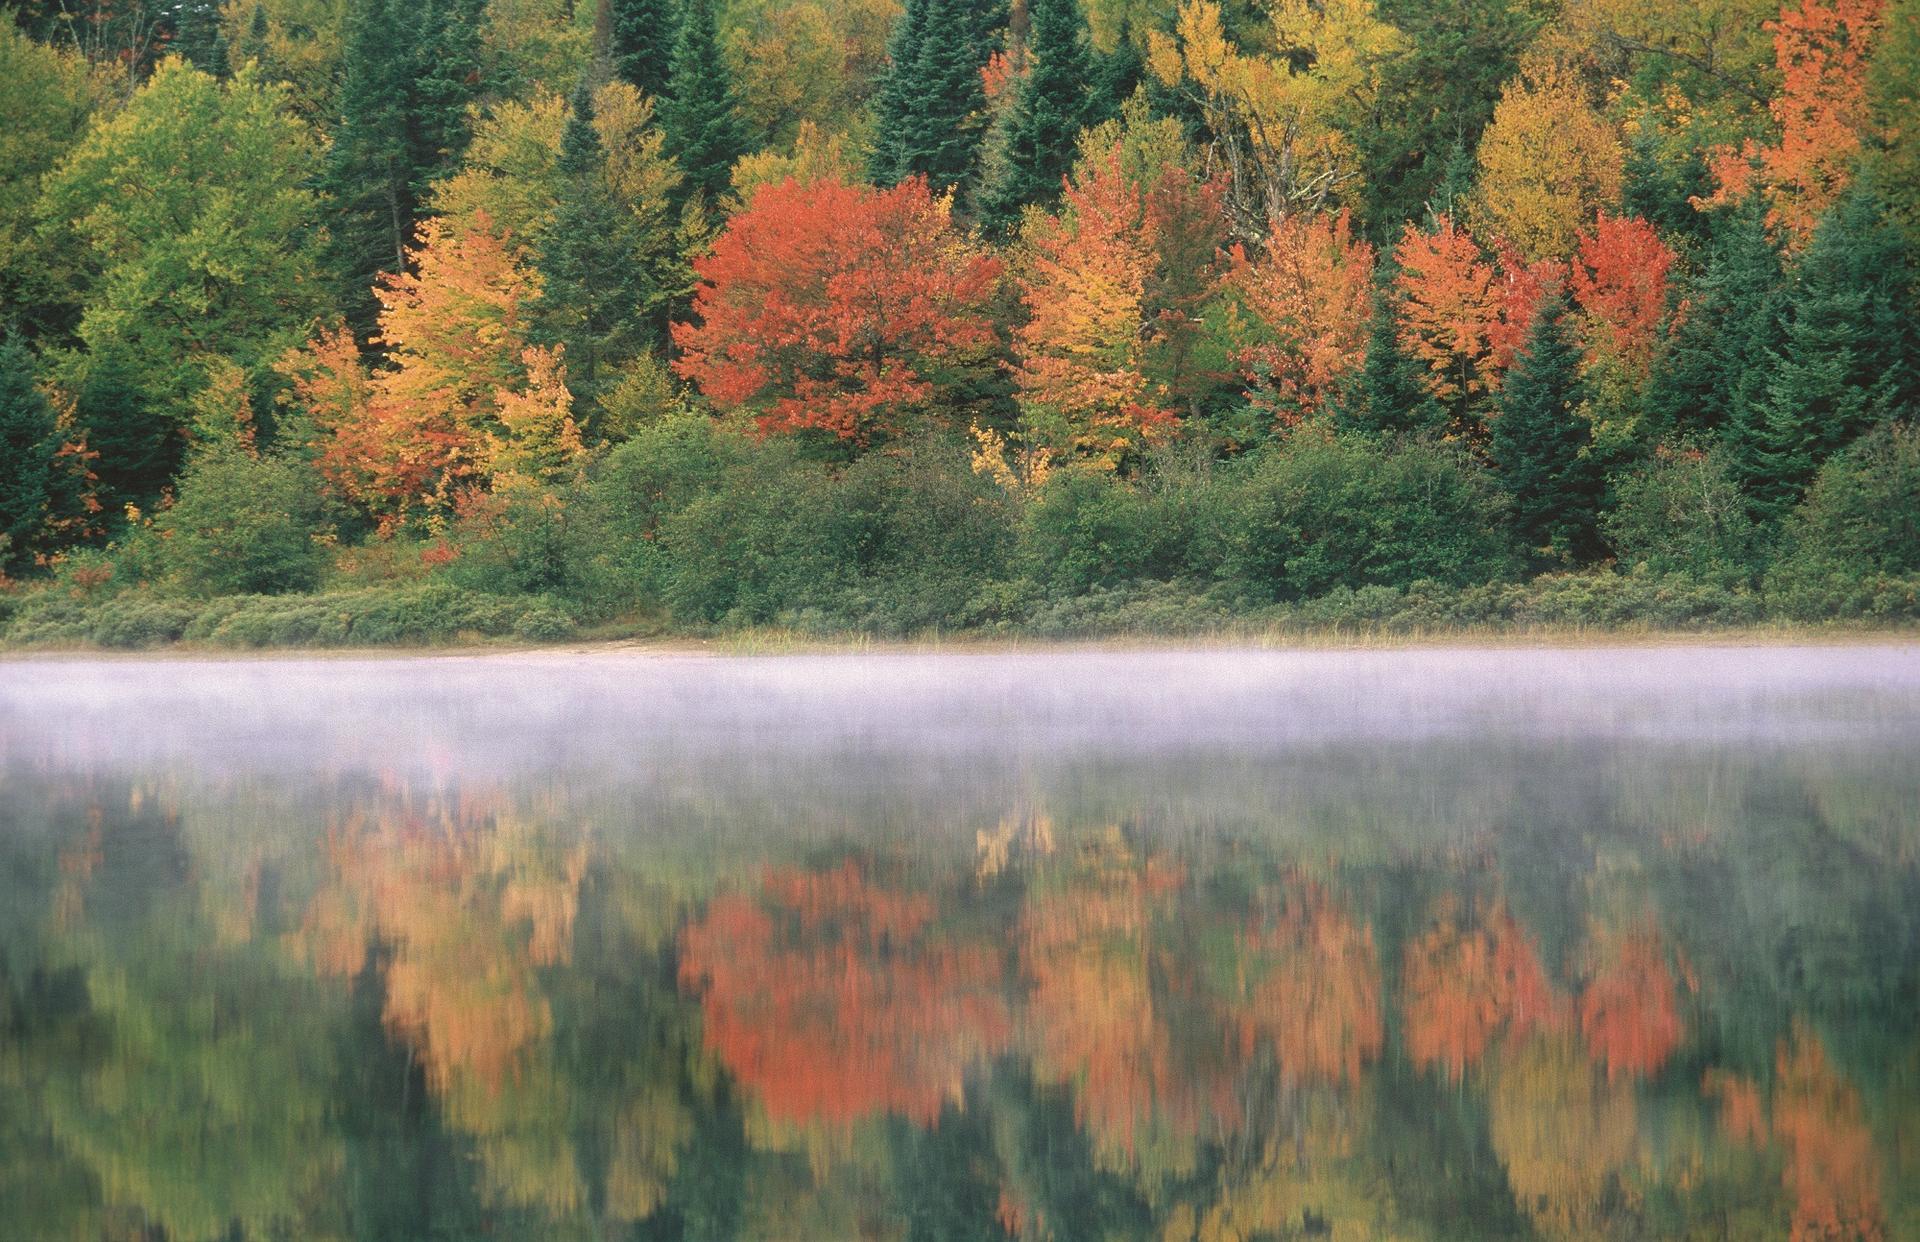 ケベック州モン・トランブラン国立公園の鏡のような湖 - credit: Heiko Wittenborn